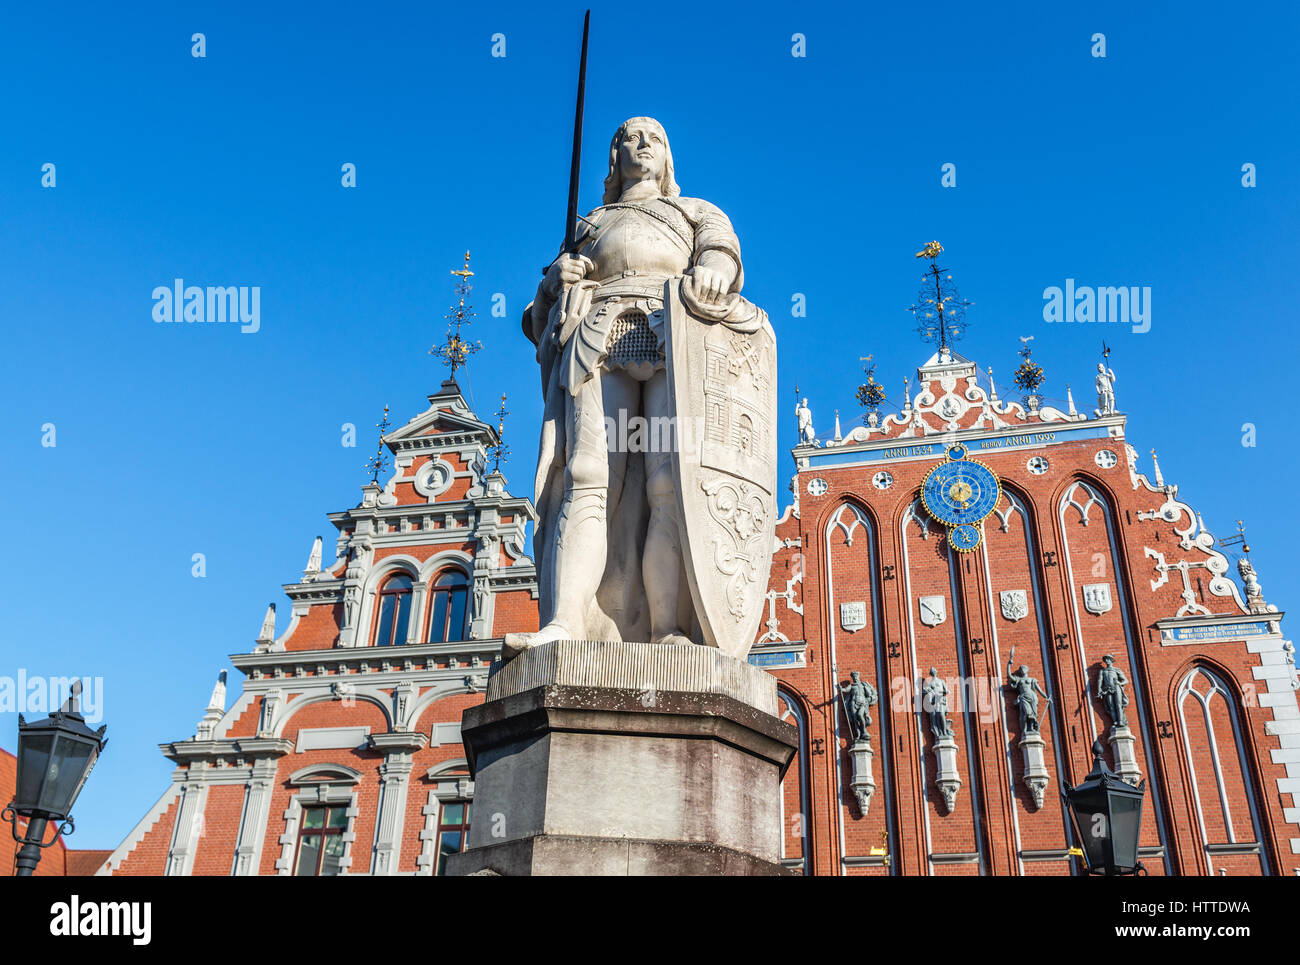 Statue de Roland sur la place Albert, vieille ville de Riga, capitale de la République de Lettonie. Maison des Têtes Noires sur l'arrière-plan Banque D'Images